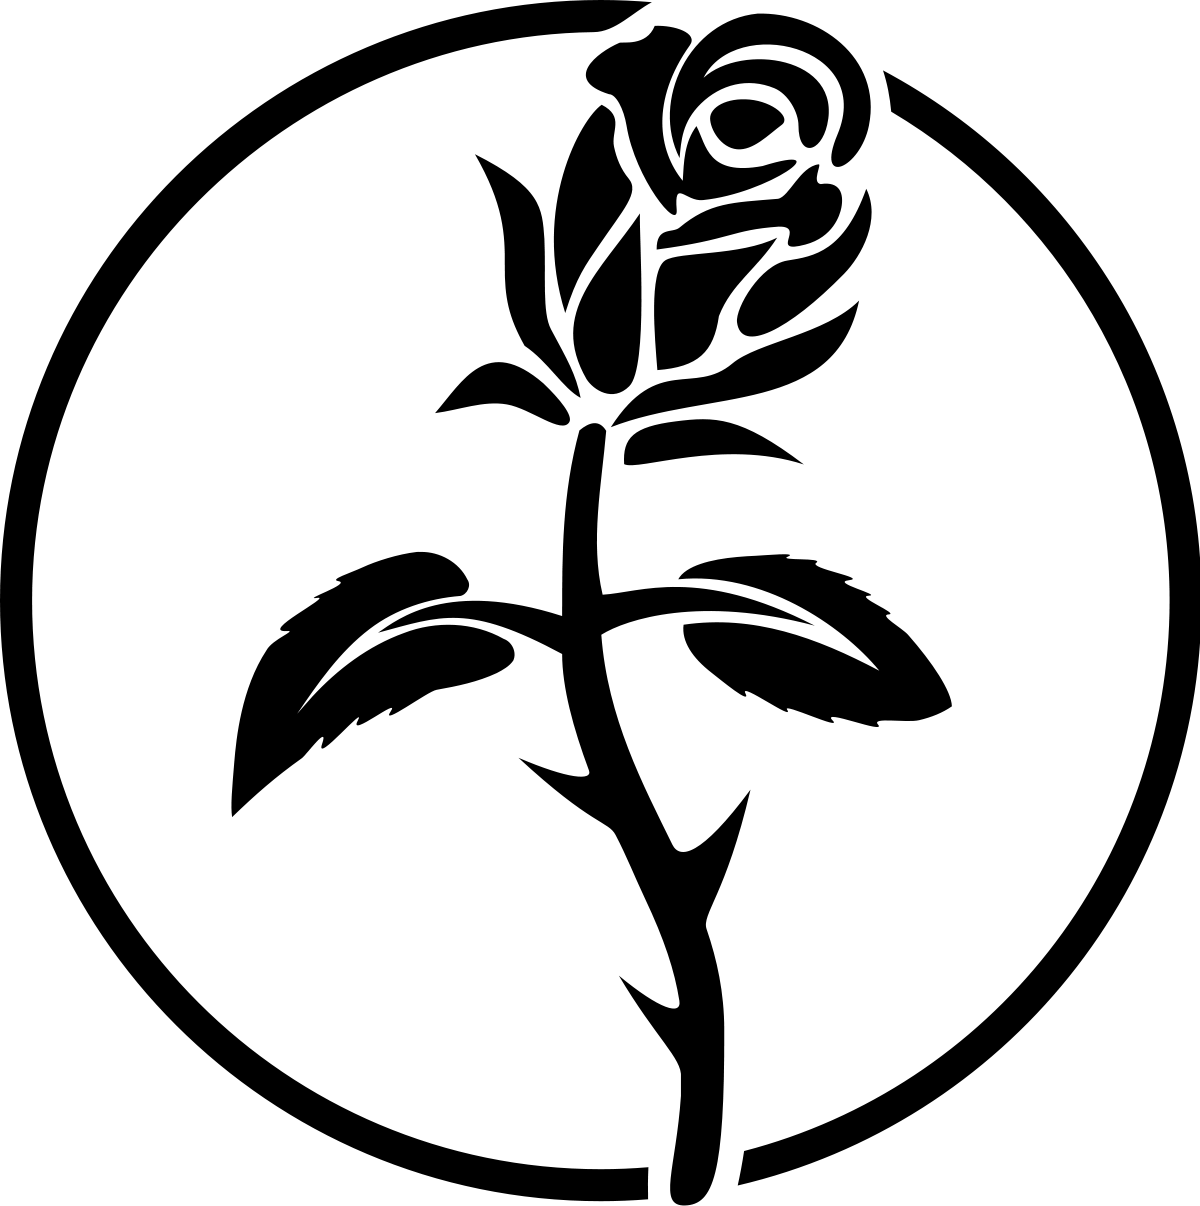 Black and White Flower Logo - Flower stem black and white clip royalty free stock